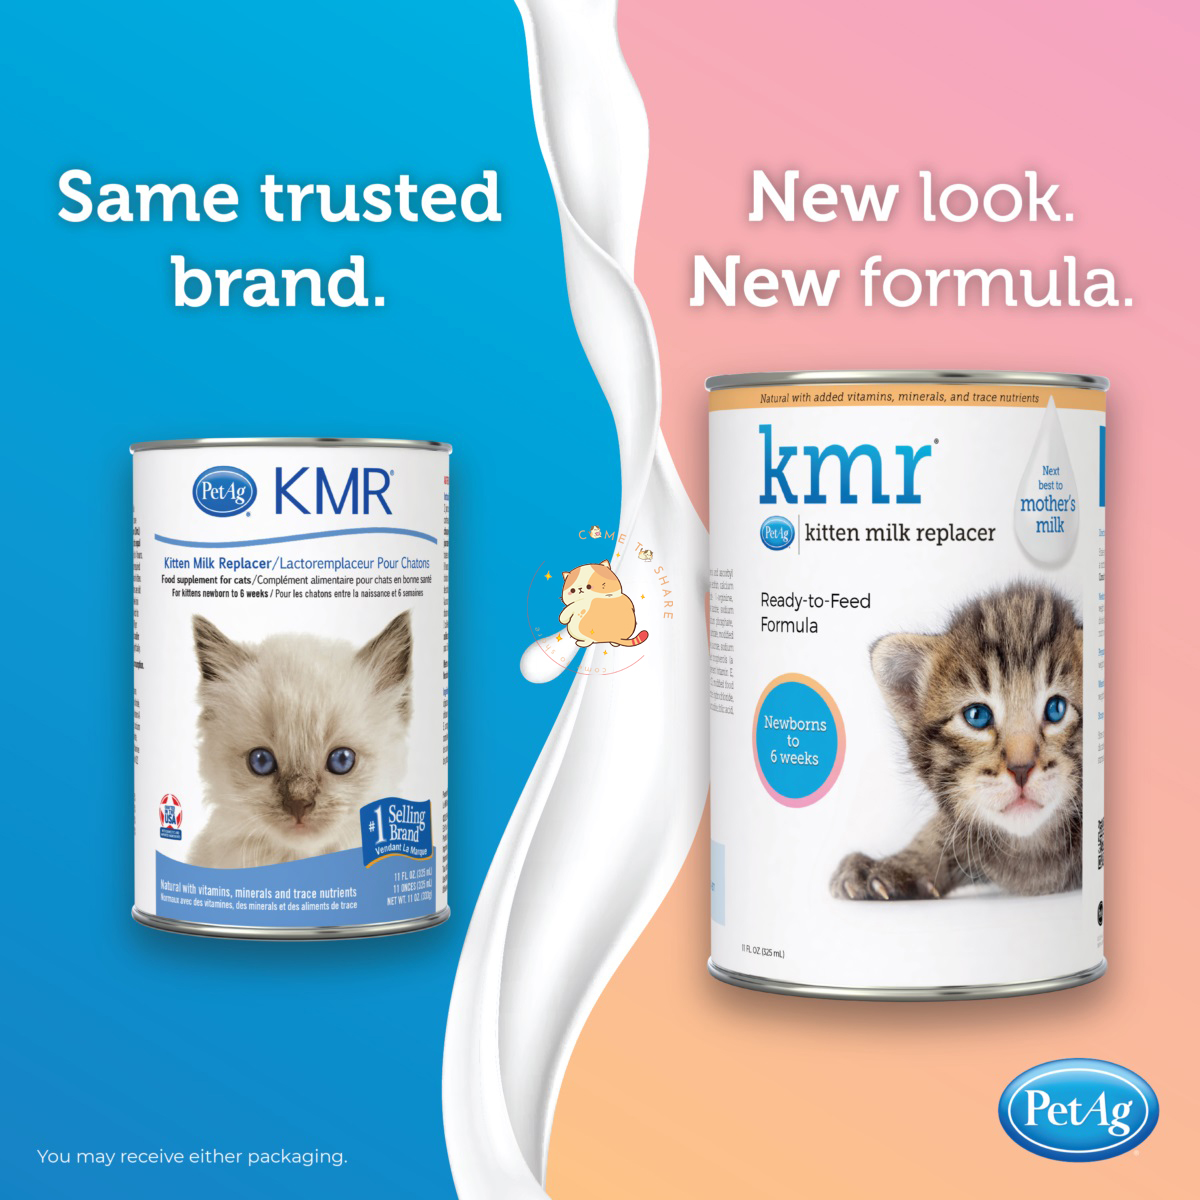 Sữa KMR cũng tới từ tên thương hiệu PetAg